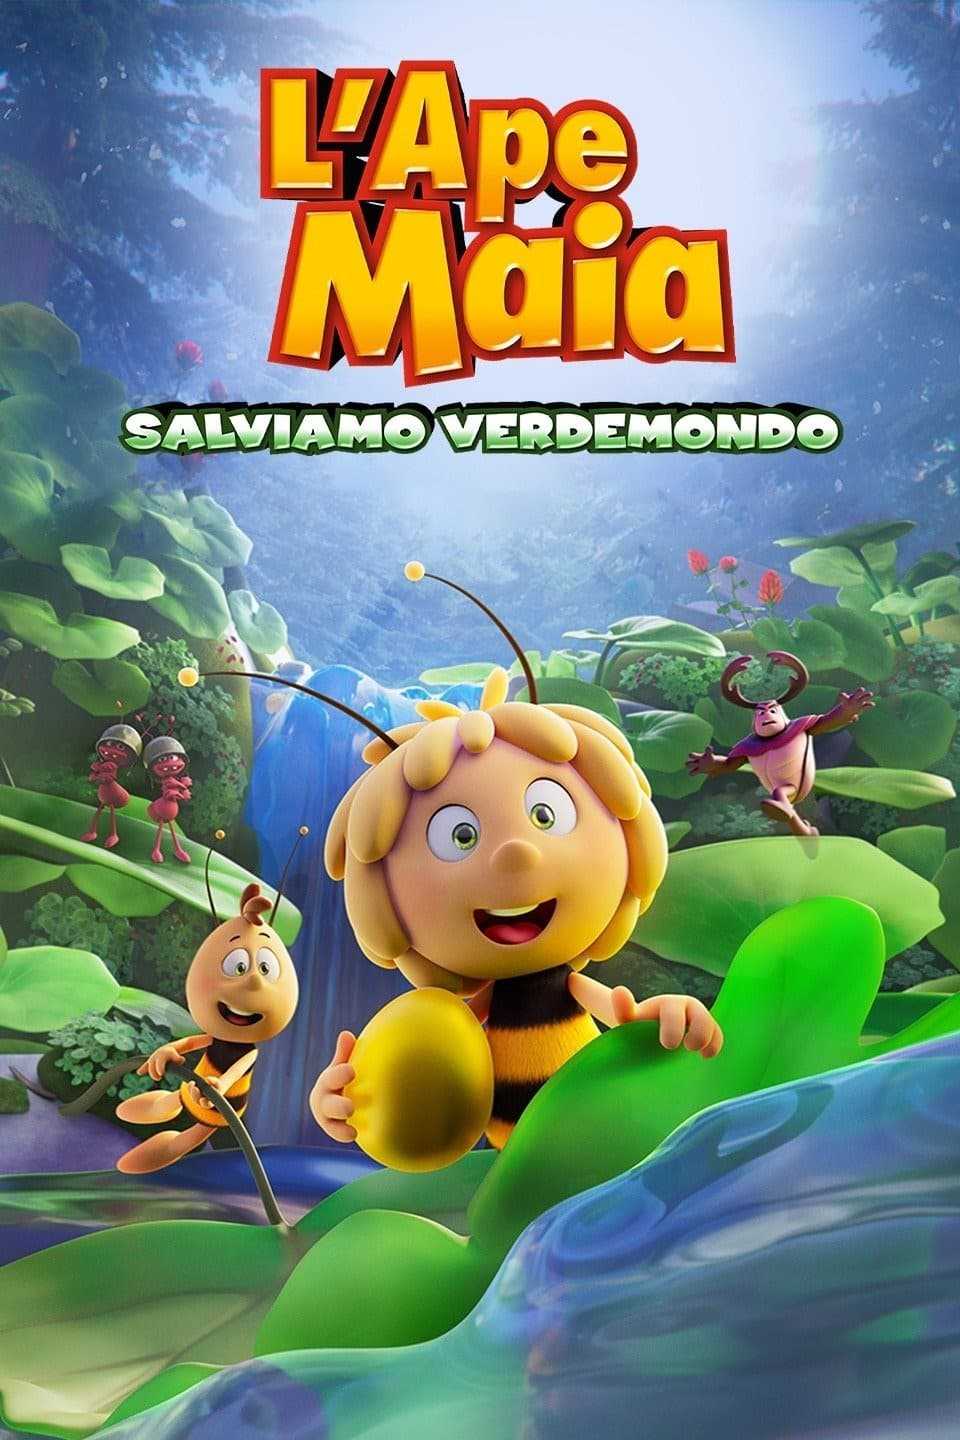 L'ape Maia - Salviamo Verdemondo in streaming